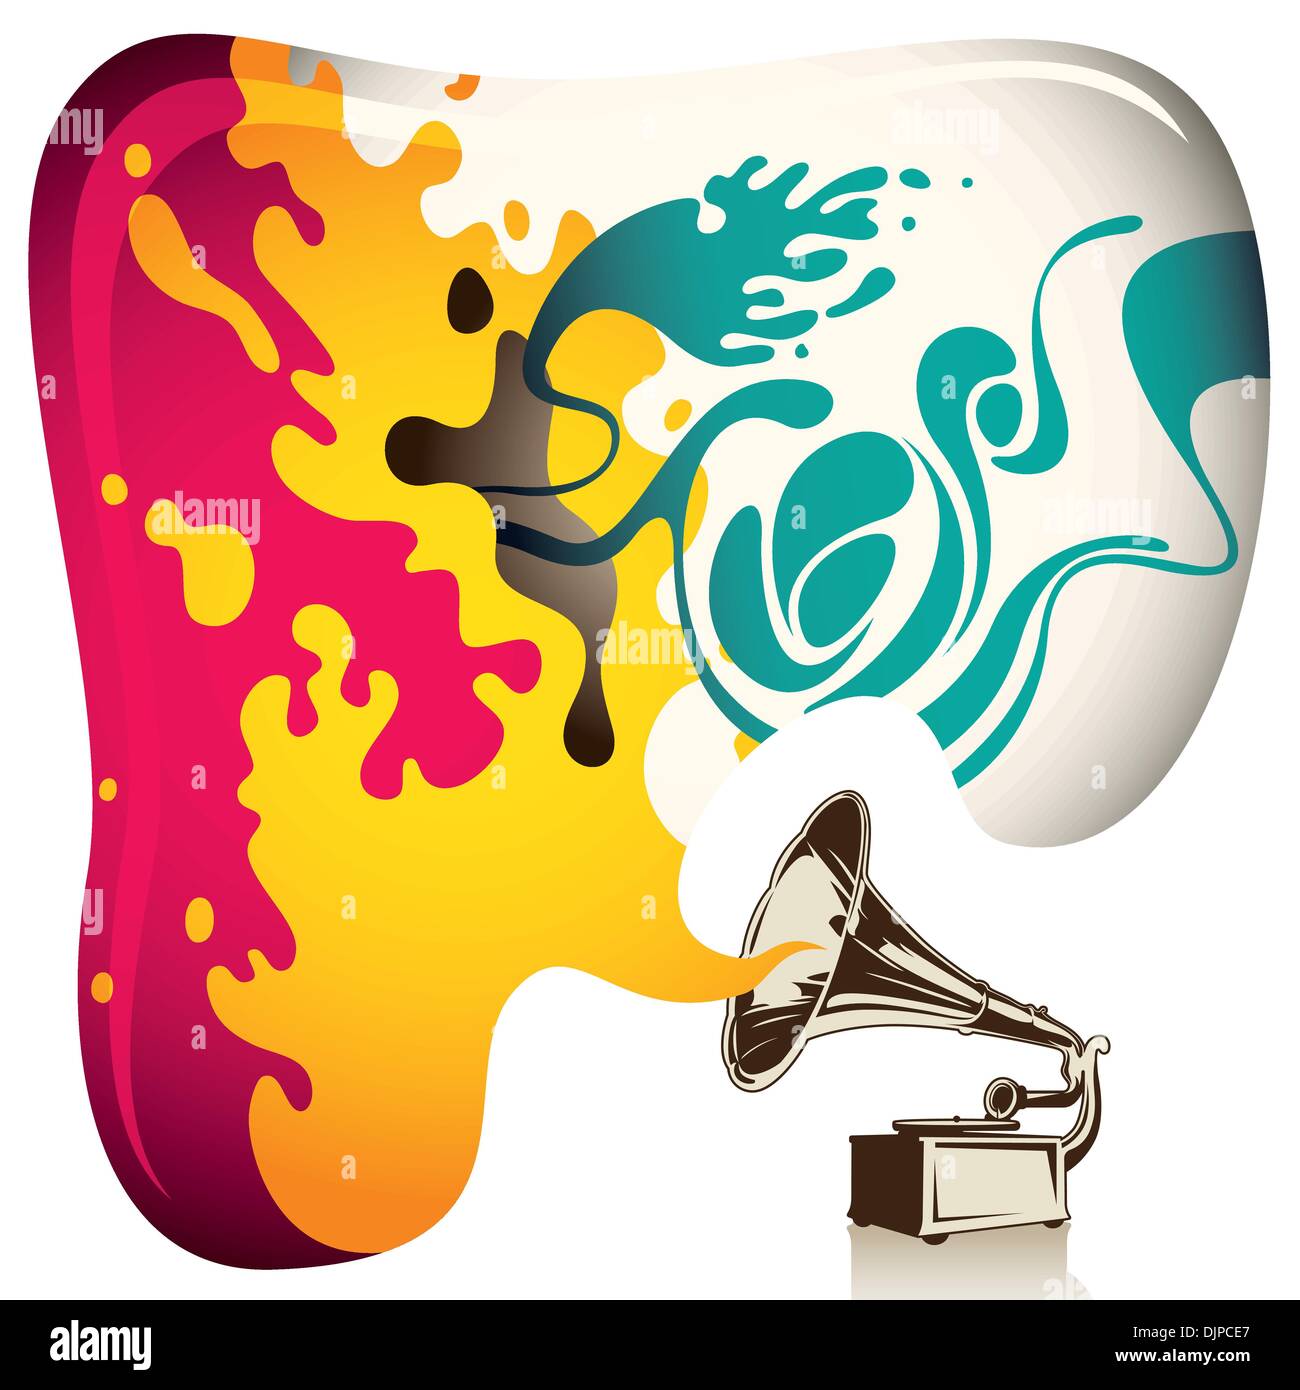 Illustrato sfondo psichedelica con il vecchio grammofono Illustrazione Vettoriale